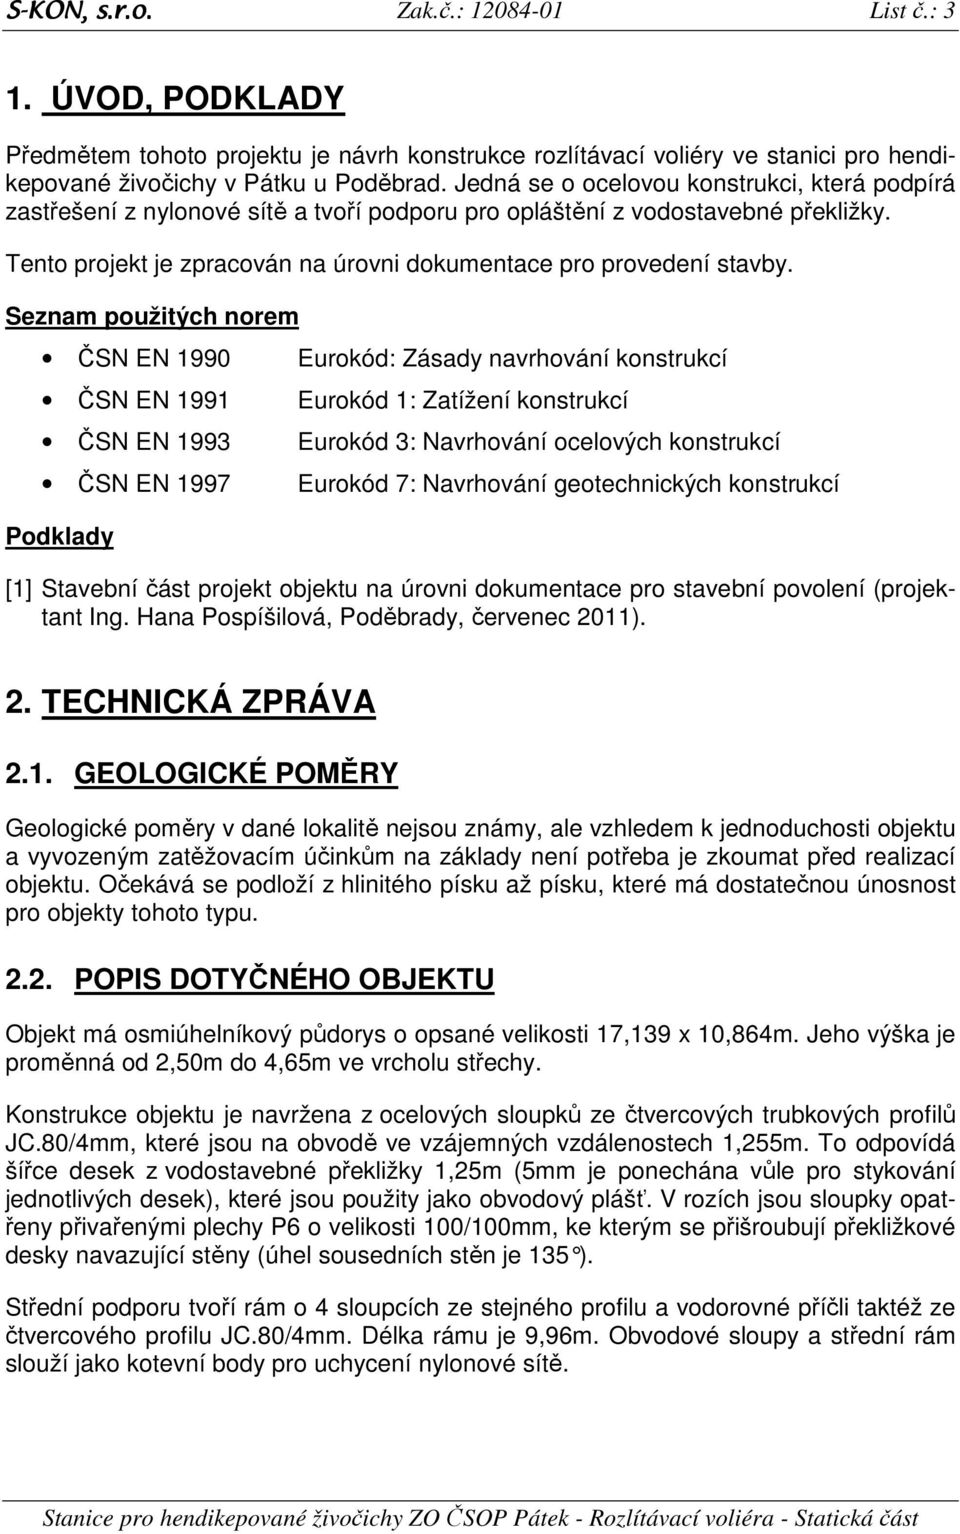 Seznam použitých norem ČSN EN 1990 ČSN EN 1991 ČSN EN 1993 ČSN EN 1997 Podklady Eurokód: ásady navrhování konstrukcí Eurokód 1: atížení konstrukcí Eurokód 3: Navrhování ocelových konstrukcí Eurokód